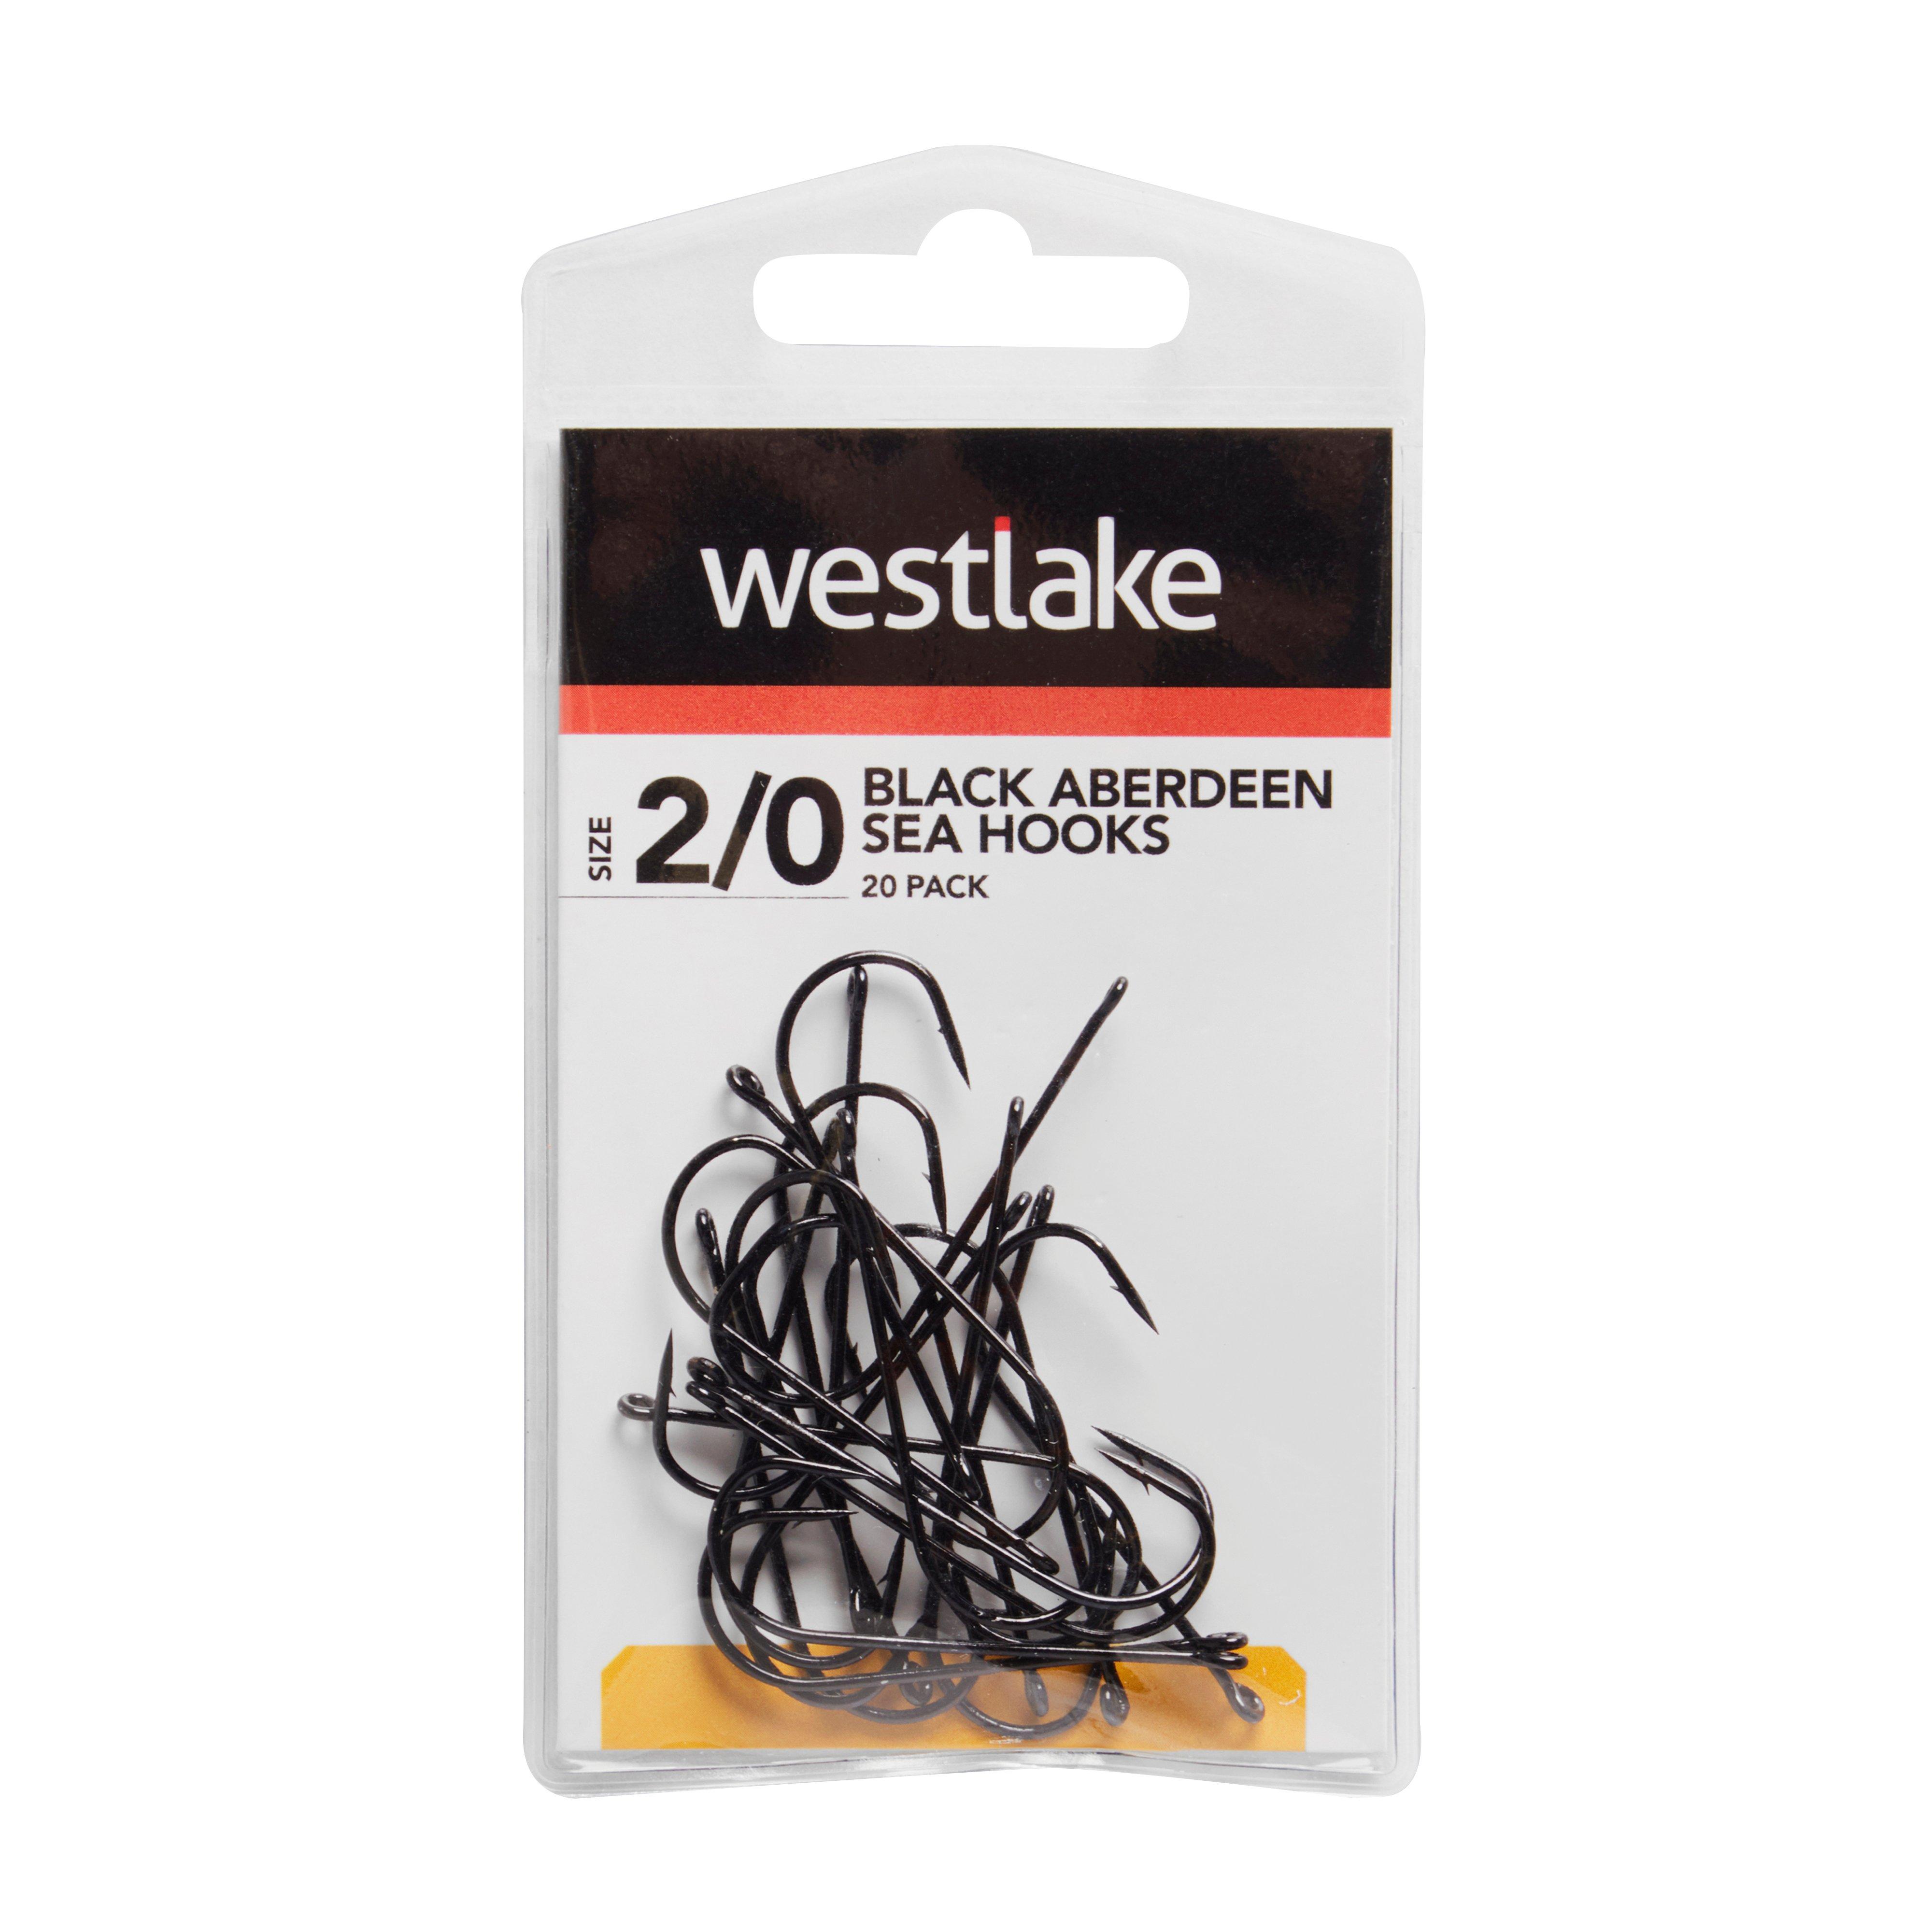 Westlake 20Pk Black Aberdeen 2/0 Review